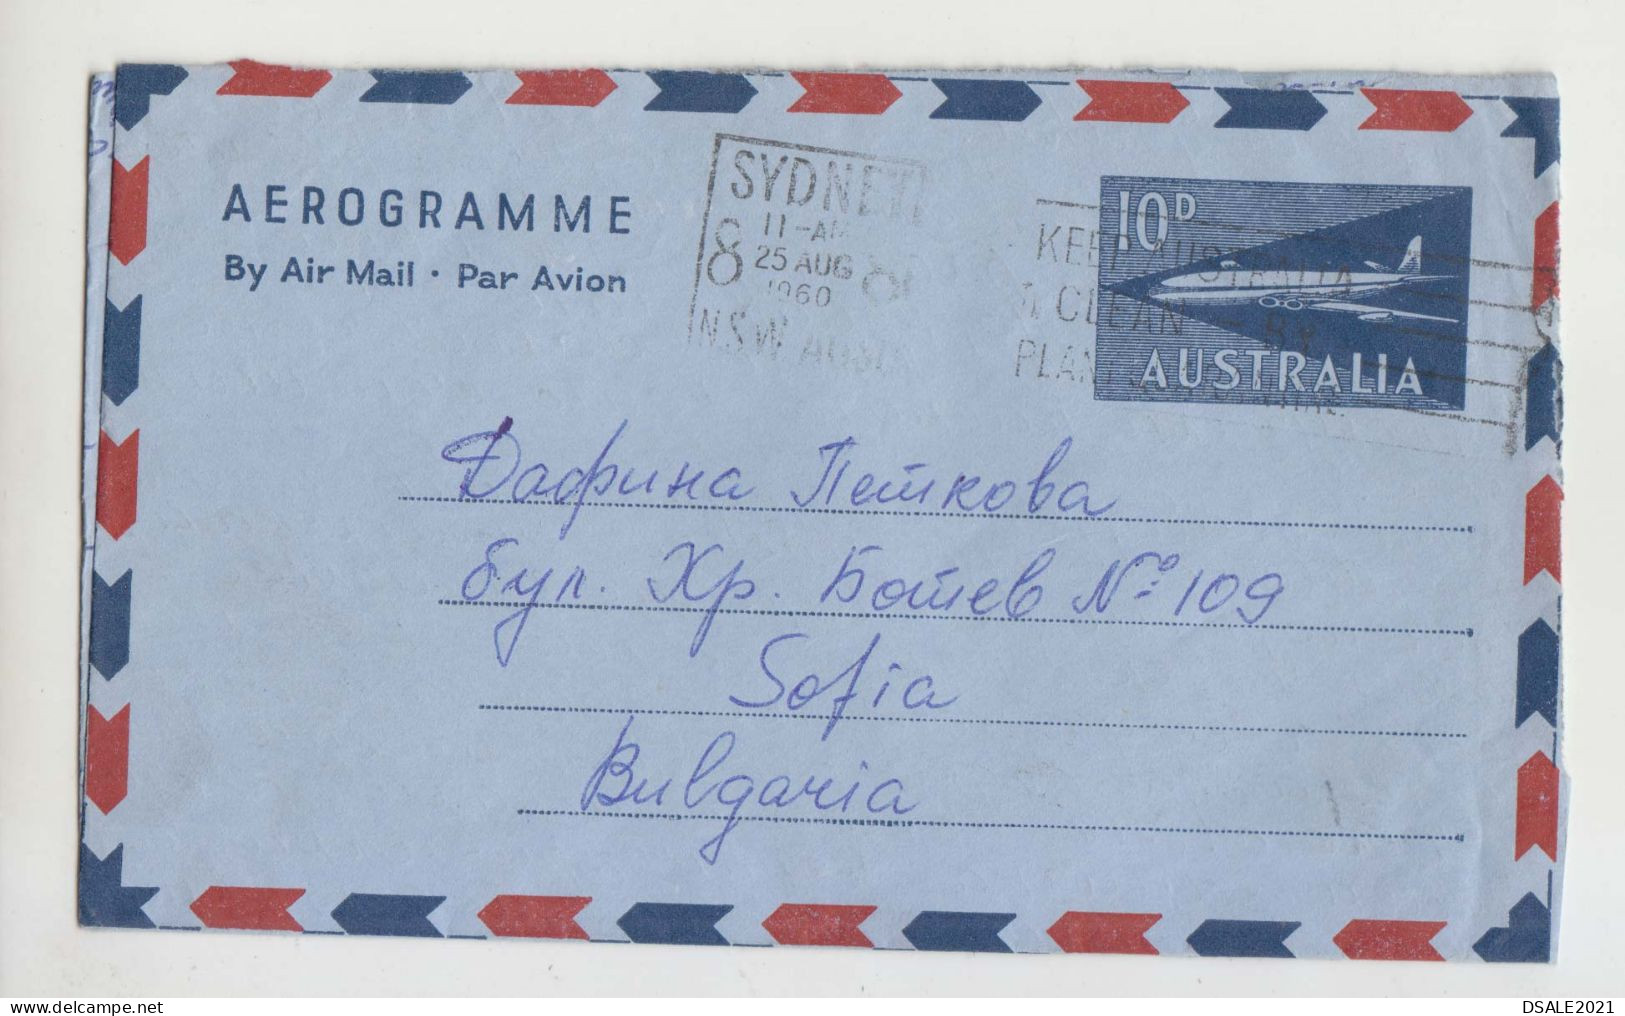 Australia Australien Australie 1960 Airmail Stationery Entier Aerogramme Aerogram (10d) Topic-Airplane To Bulgaria Ds938 - Aerograms